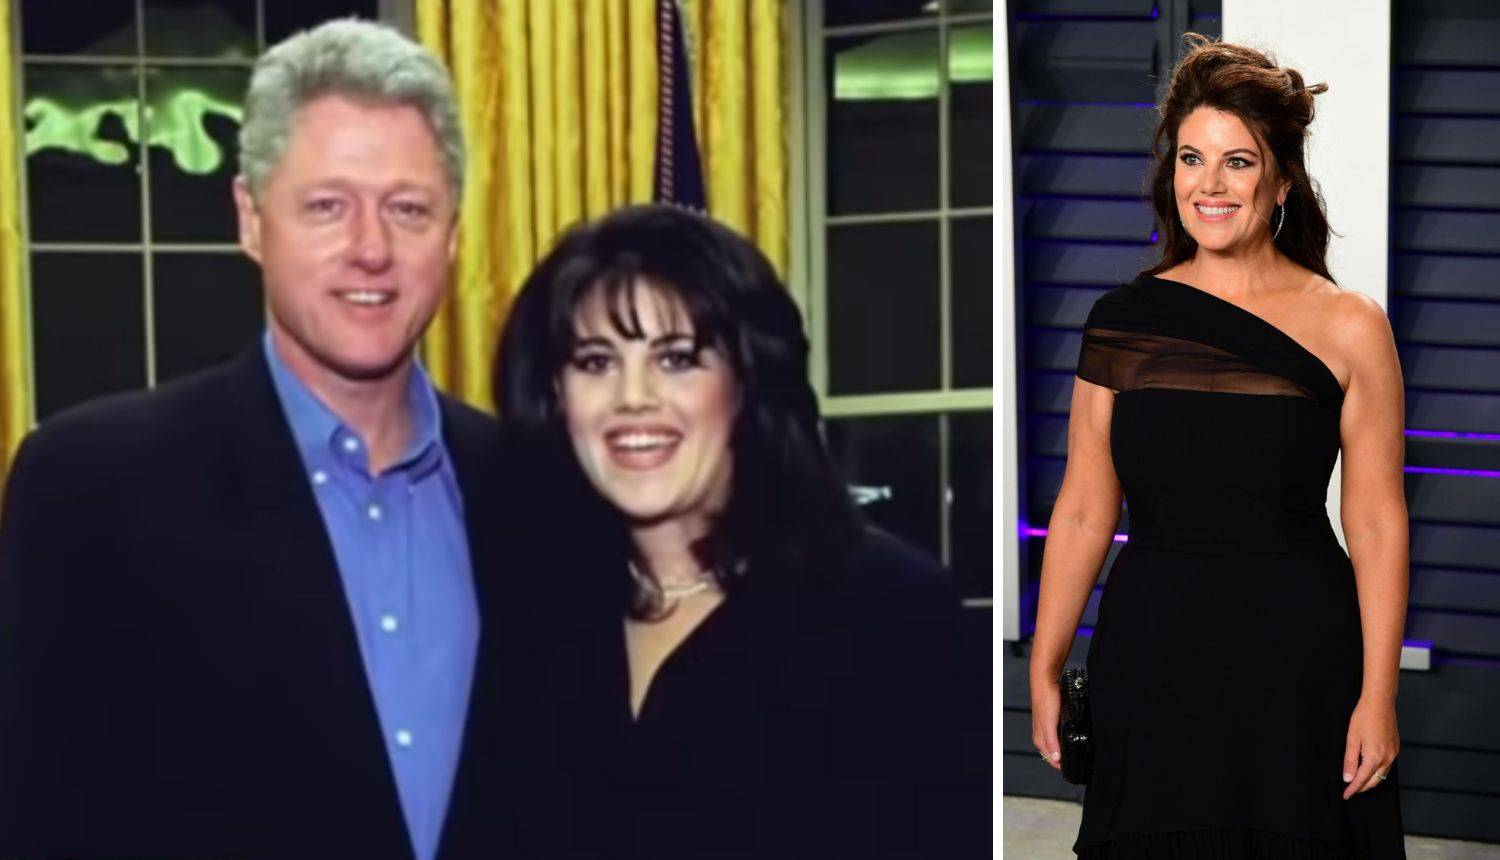 Za popularnu seriju Lewinsky režira svoju aferu s Clintonom